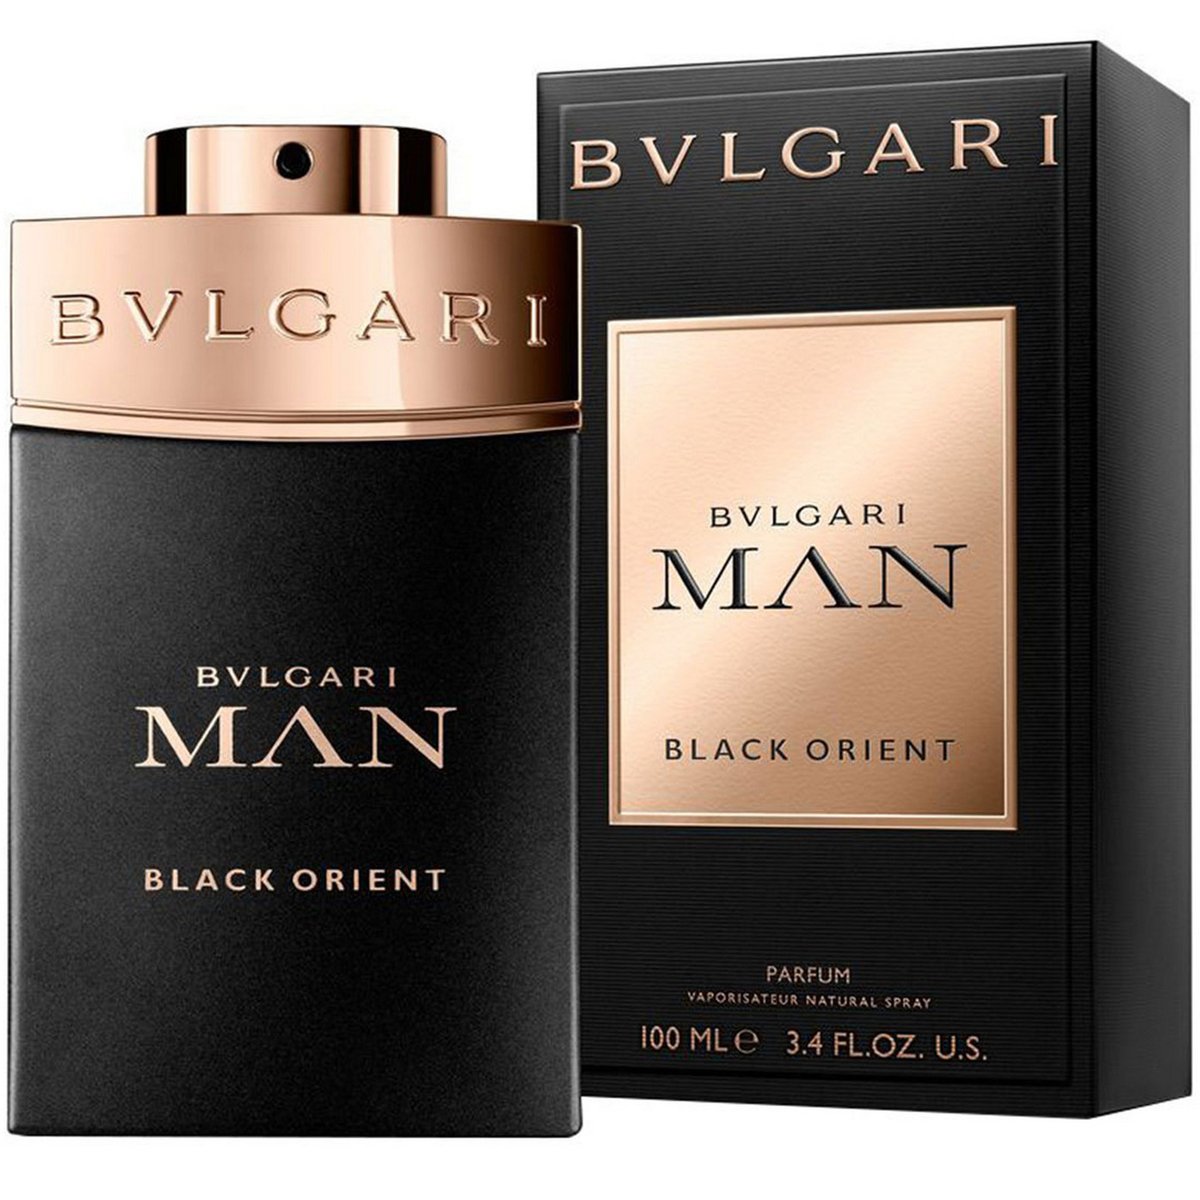 Bvlgari Man Black Orient Eau De Parfum for Men 100ml